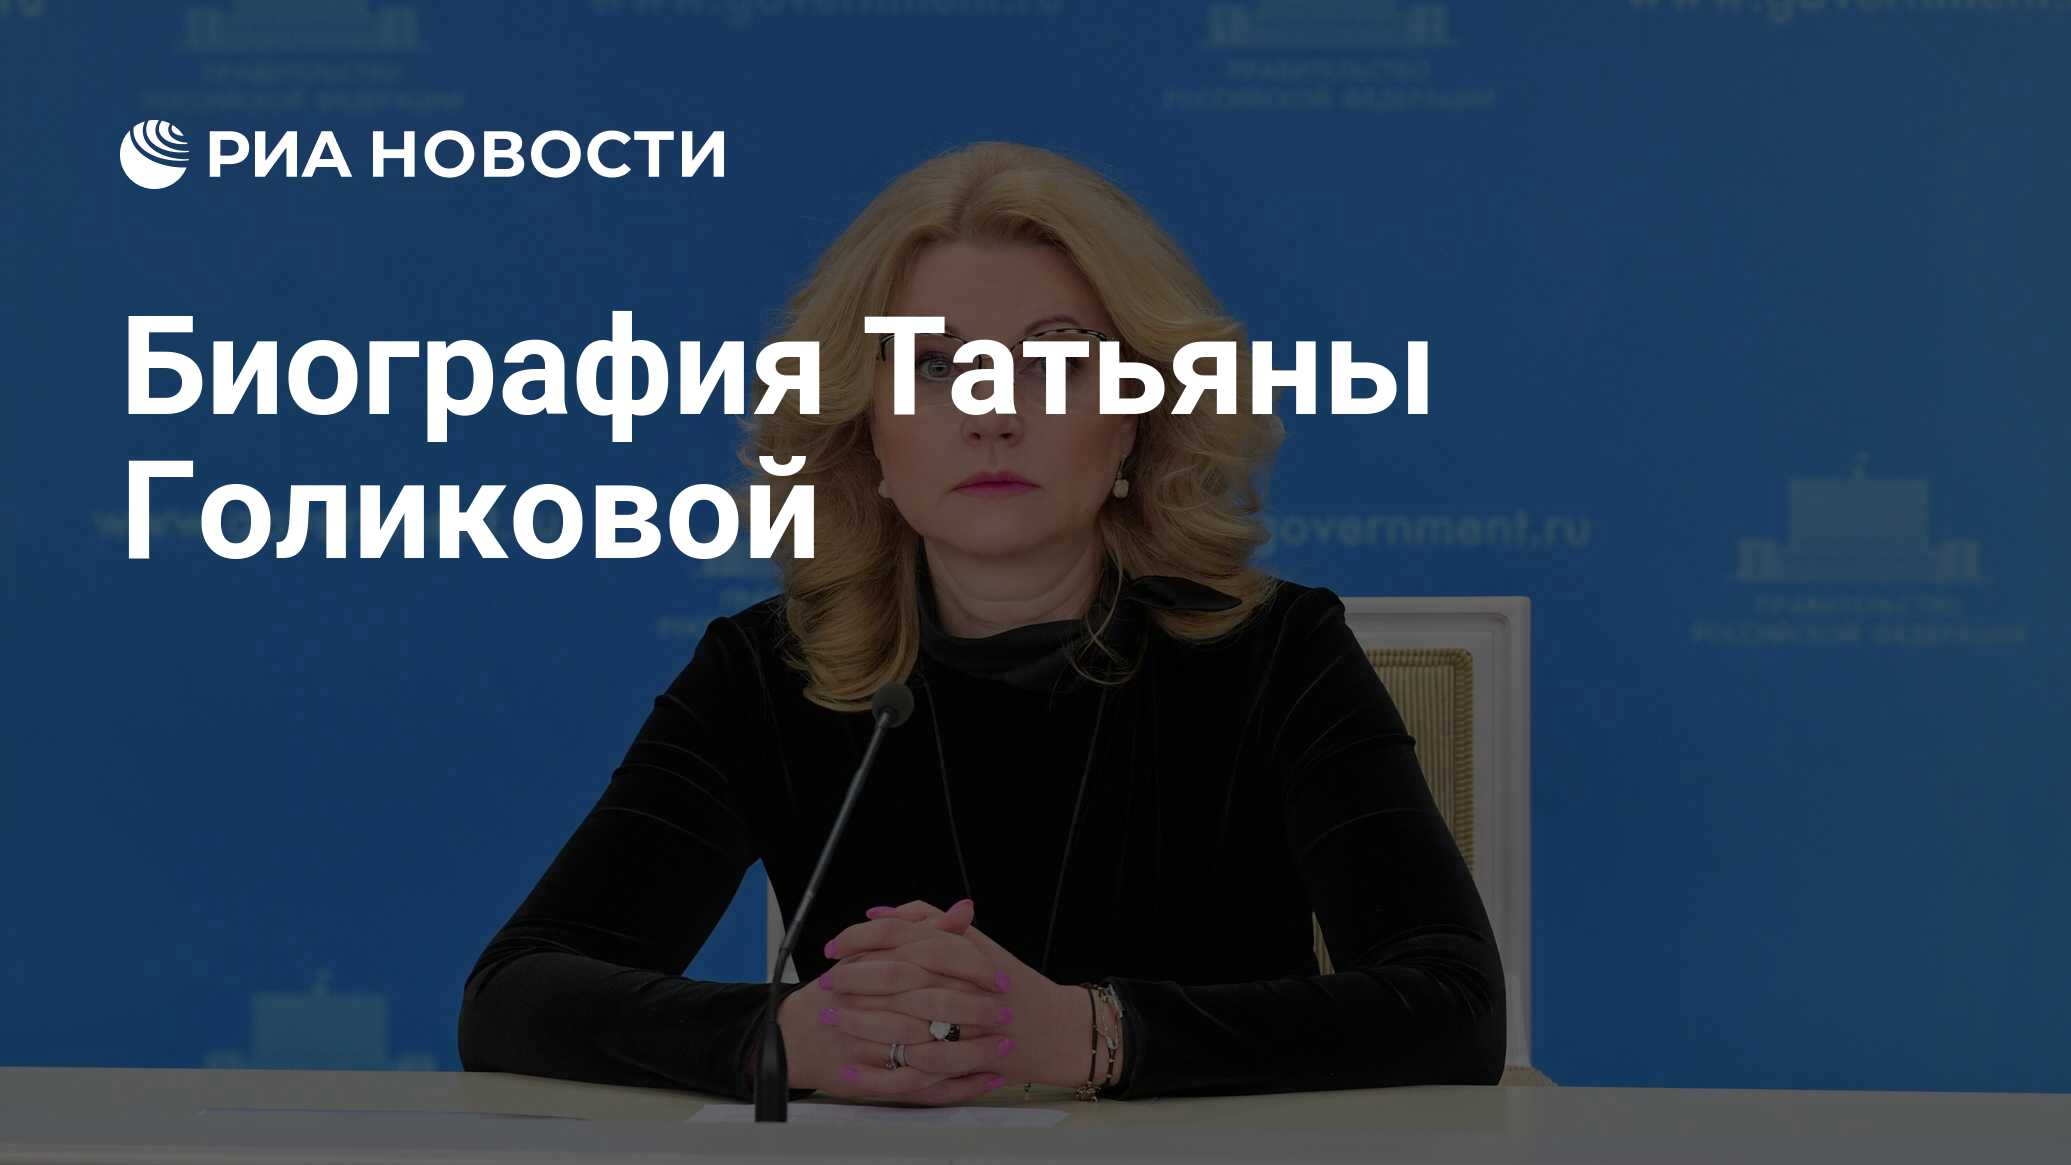 Биография Татьяны Голиковой - РИА Новости, 09.02.2021